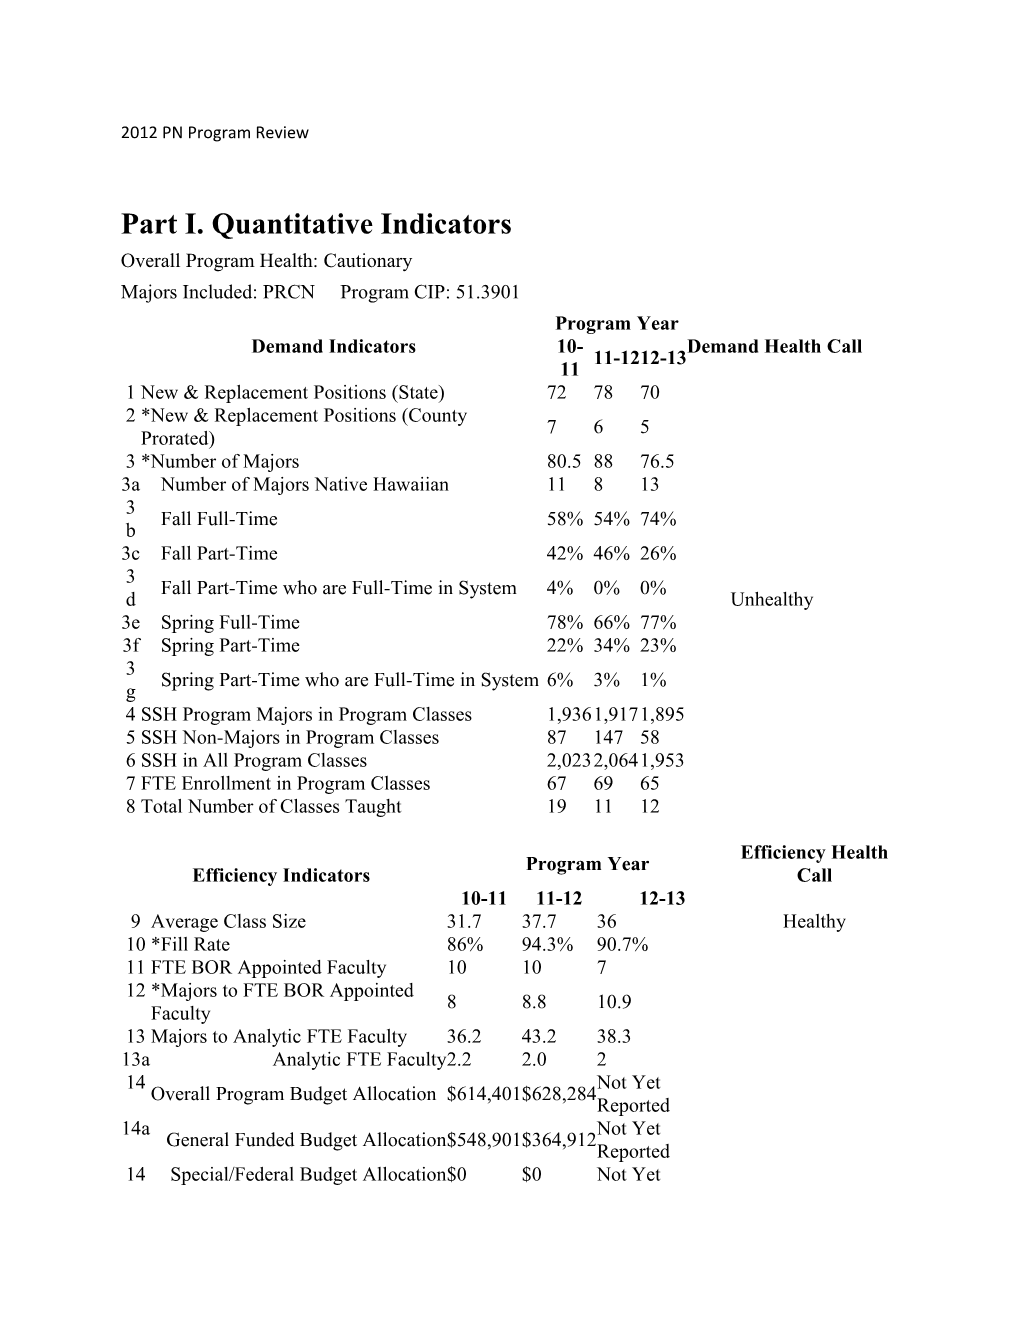 Part I. Quantitative Indicators